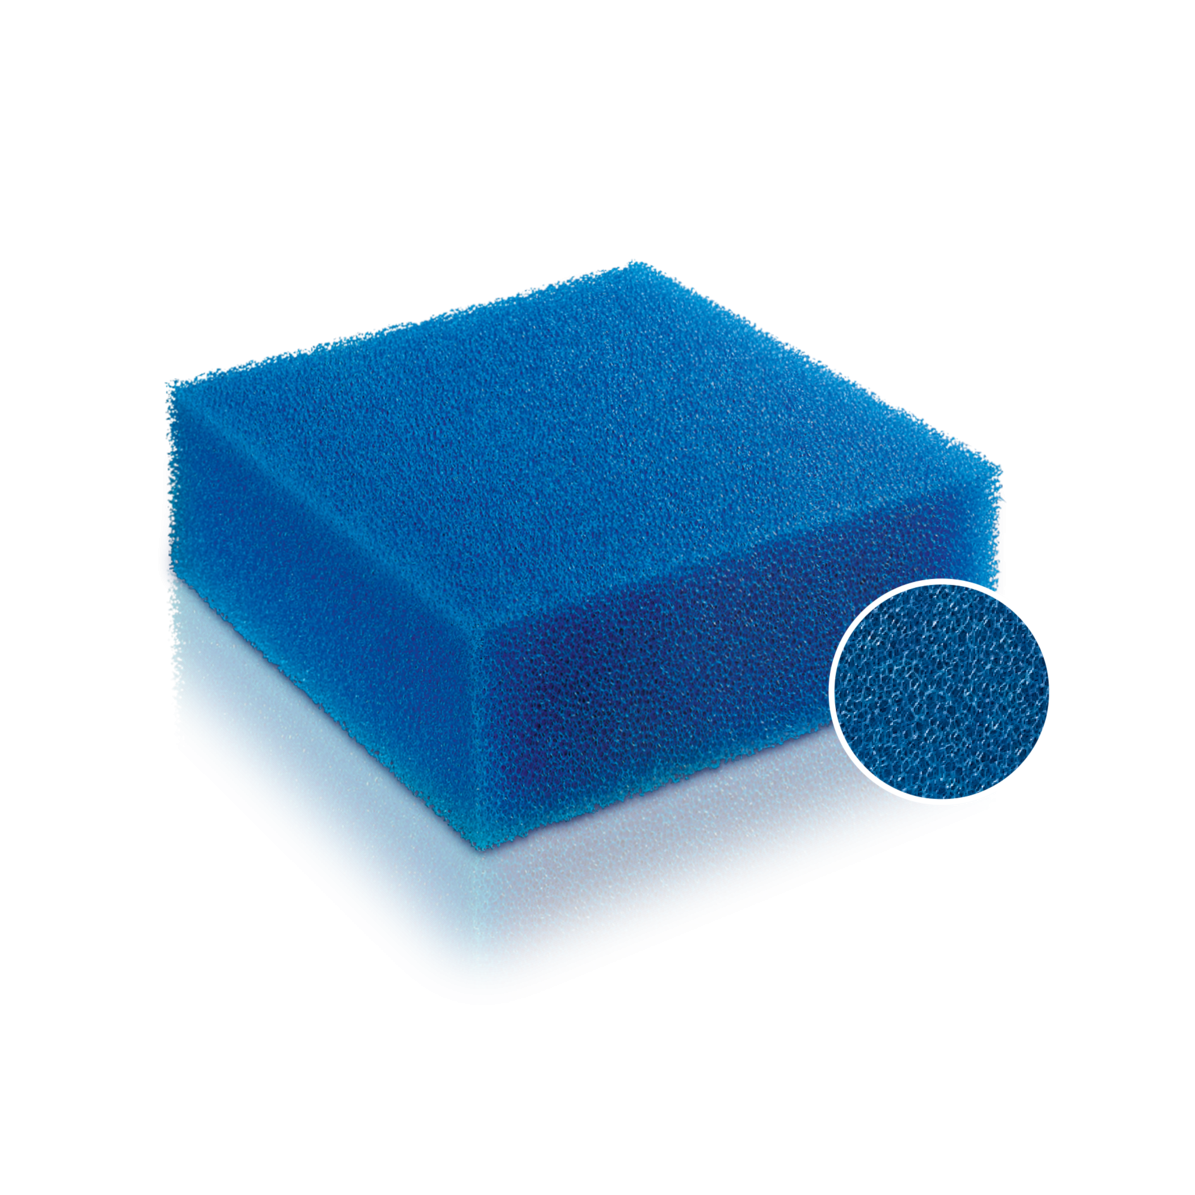 Juwel Filter cartridge - fine sponge Standart / Bioflow 6.0 / L